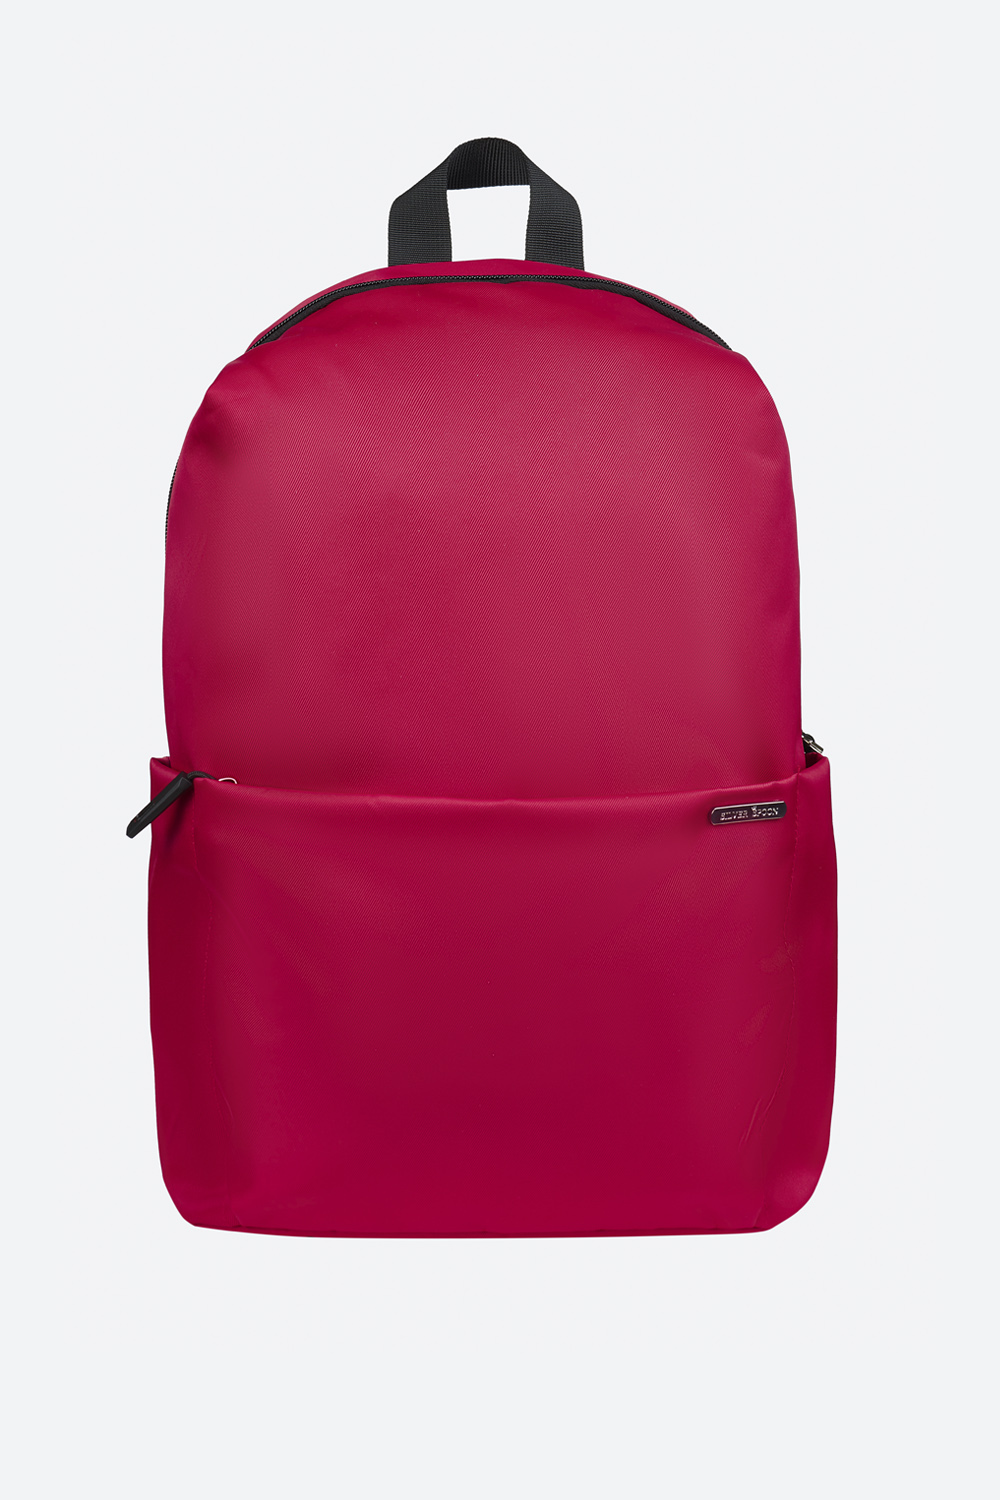 Компактный и вместительный рюкзак с потайным карманом